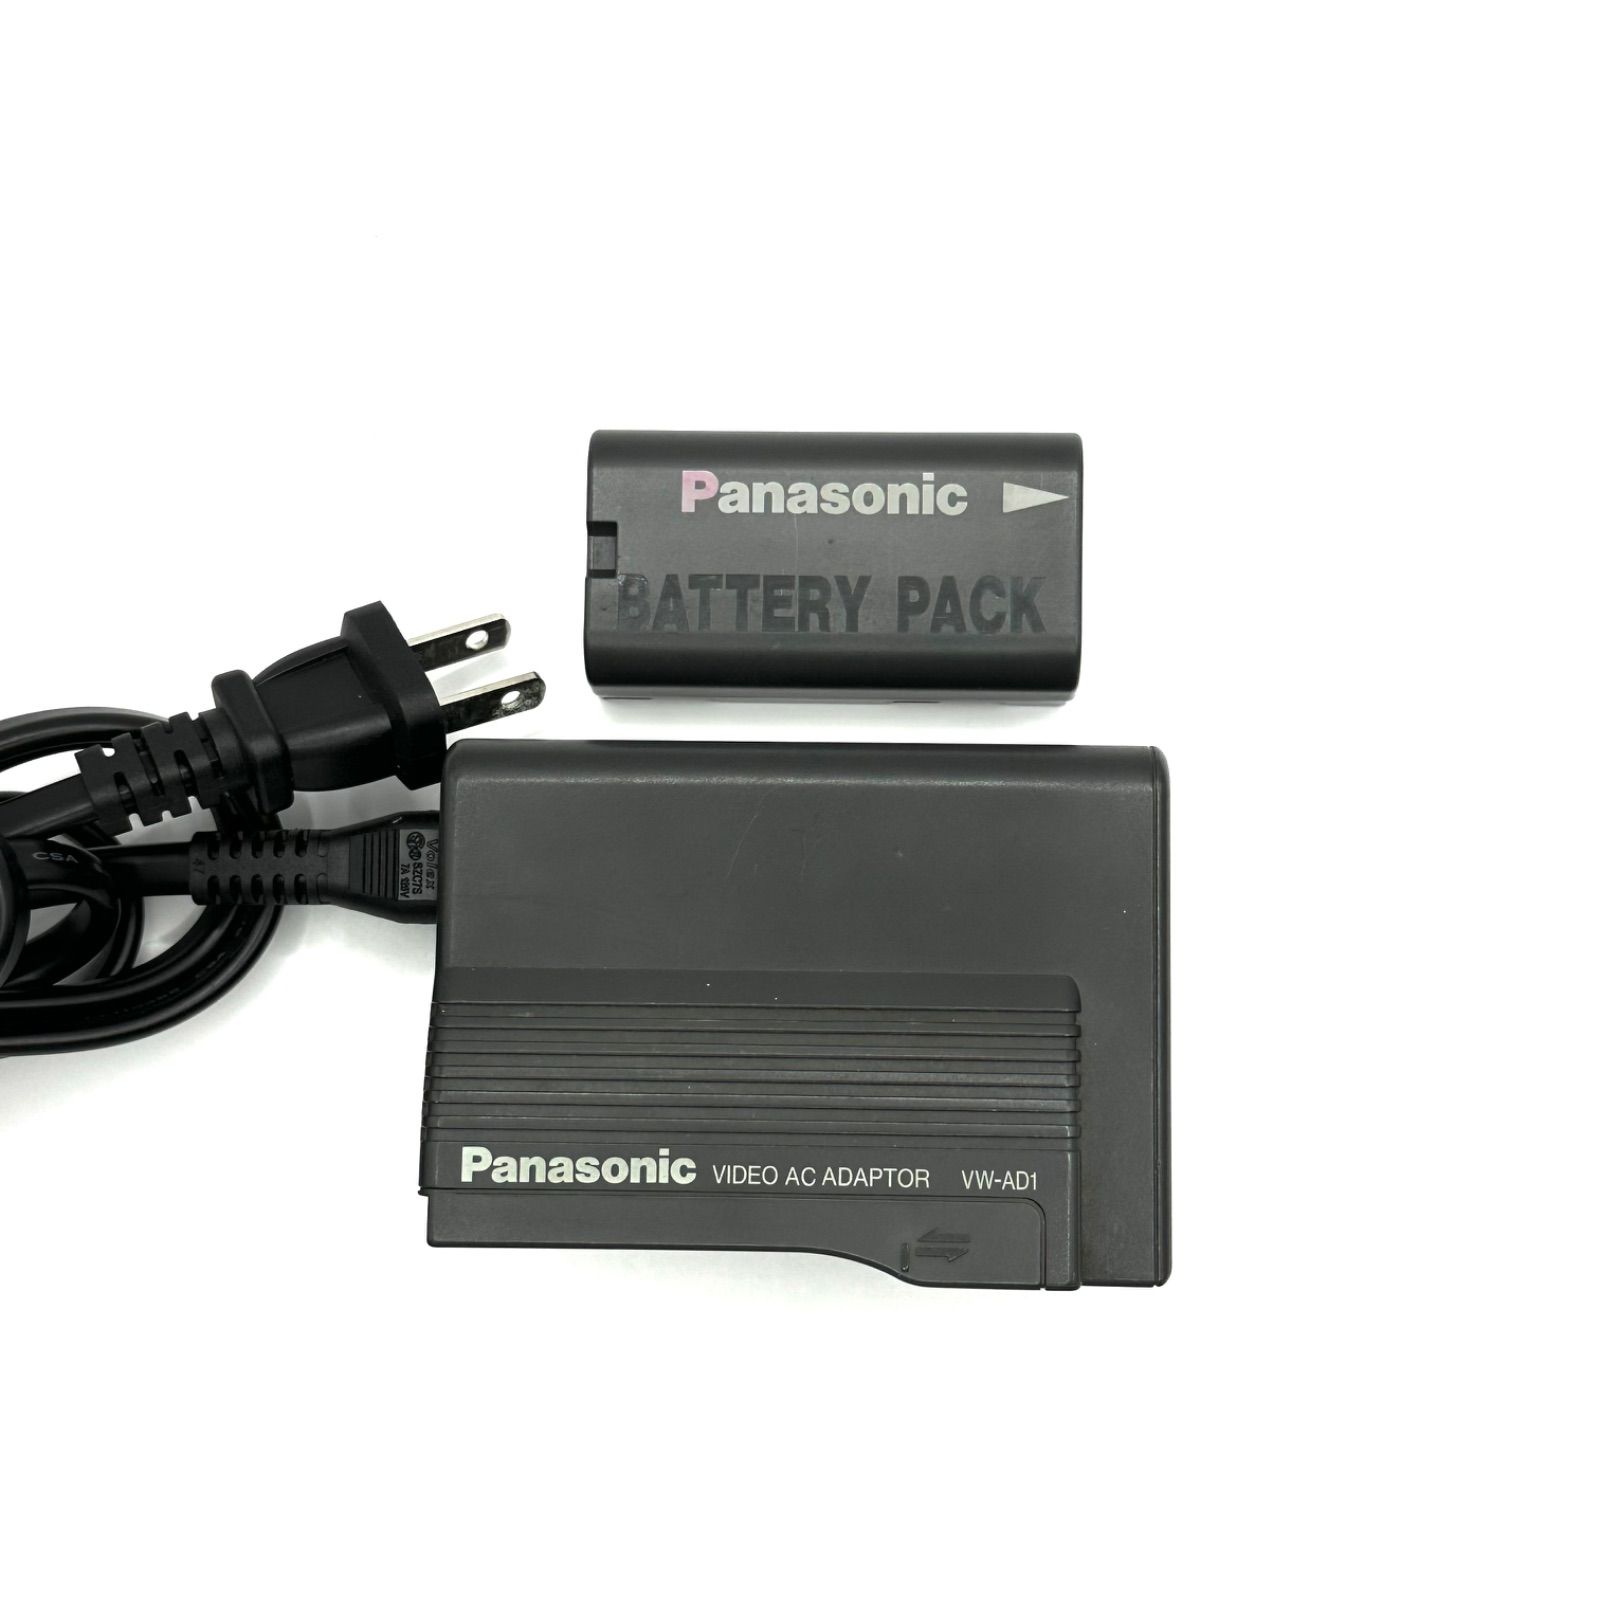 パナソニック VW-AD1 Panasonic ACアダプター ビデオカメラ カメラ デジタルビデオカメラ 充電器 チャージャー  バッテリーチャージャー 充電 1022-1656